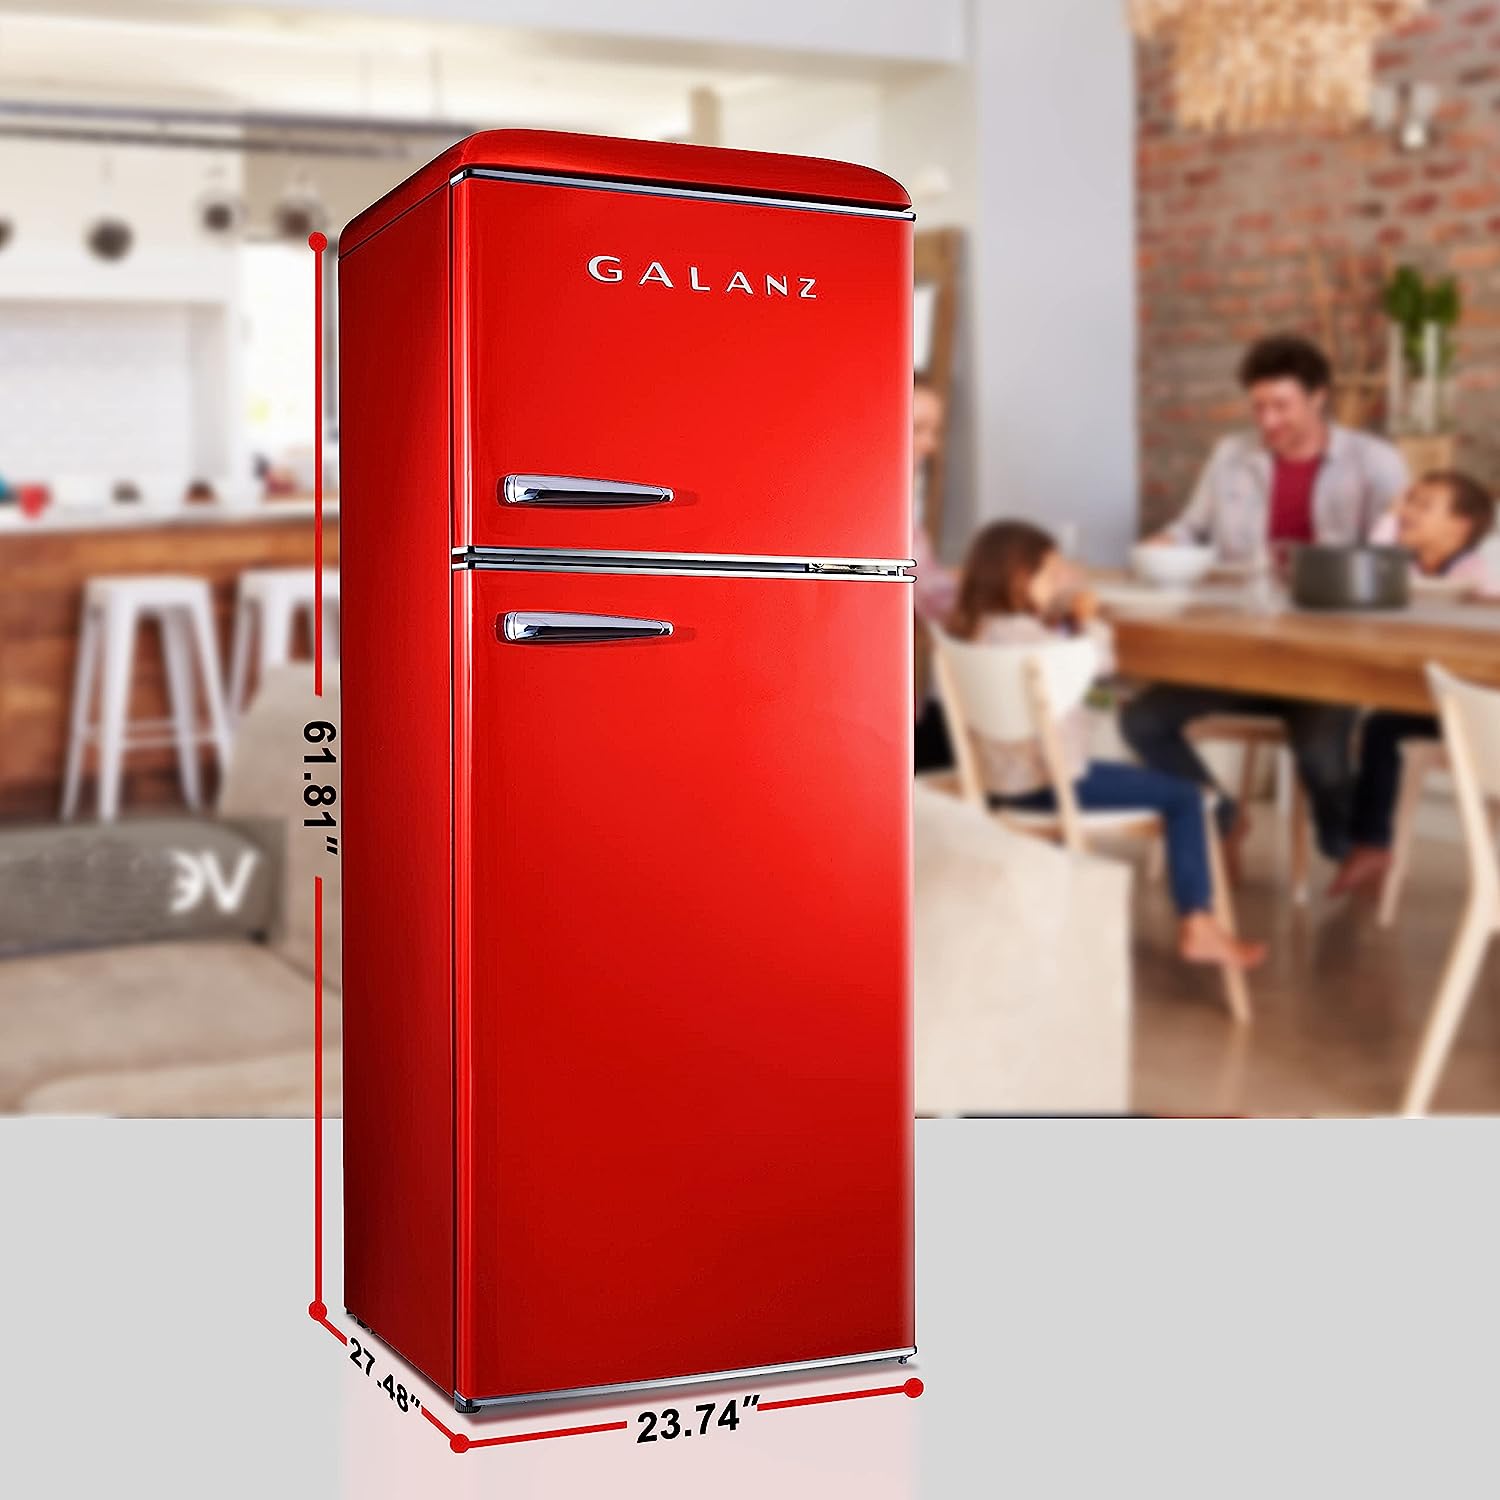 52056 - Galanz - Retro 7.6 Cu. Ft Top Freezer Refrigerator - Red USA